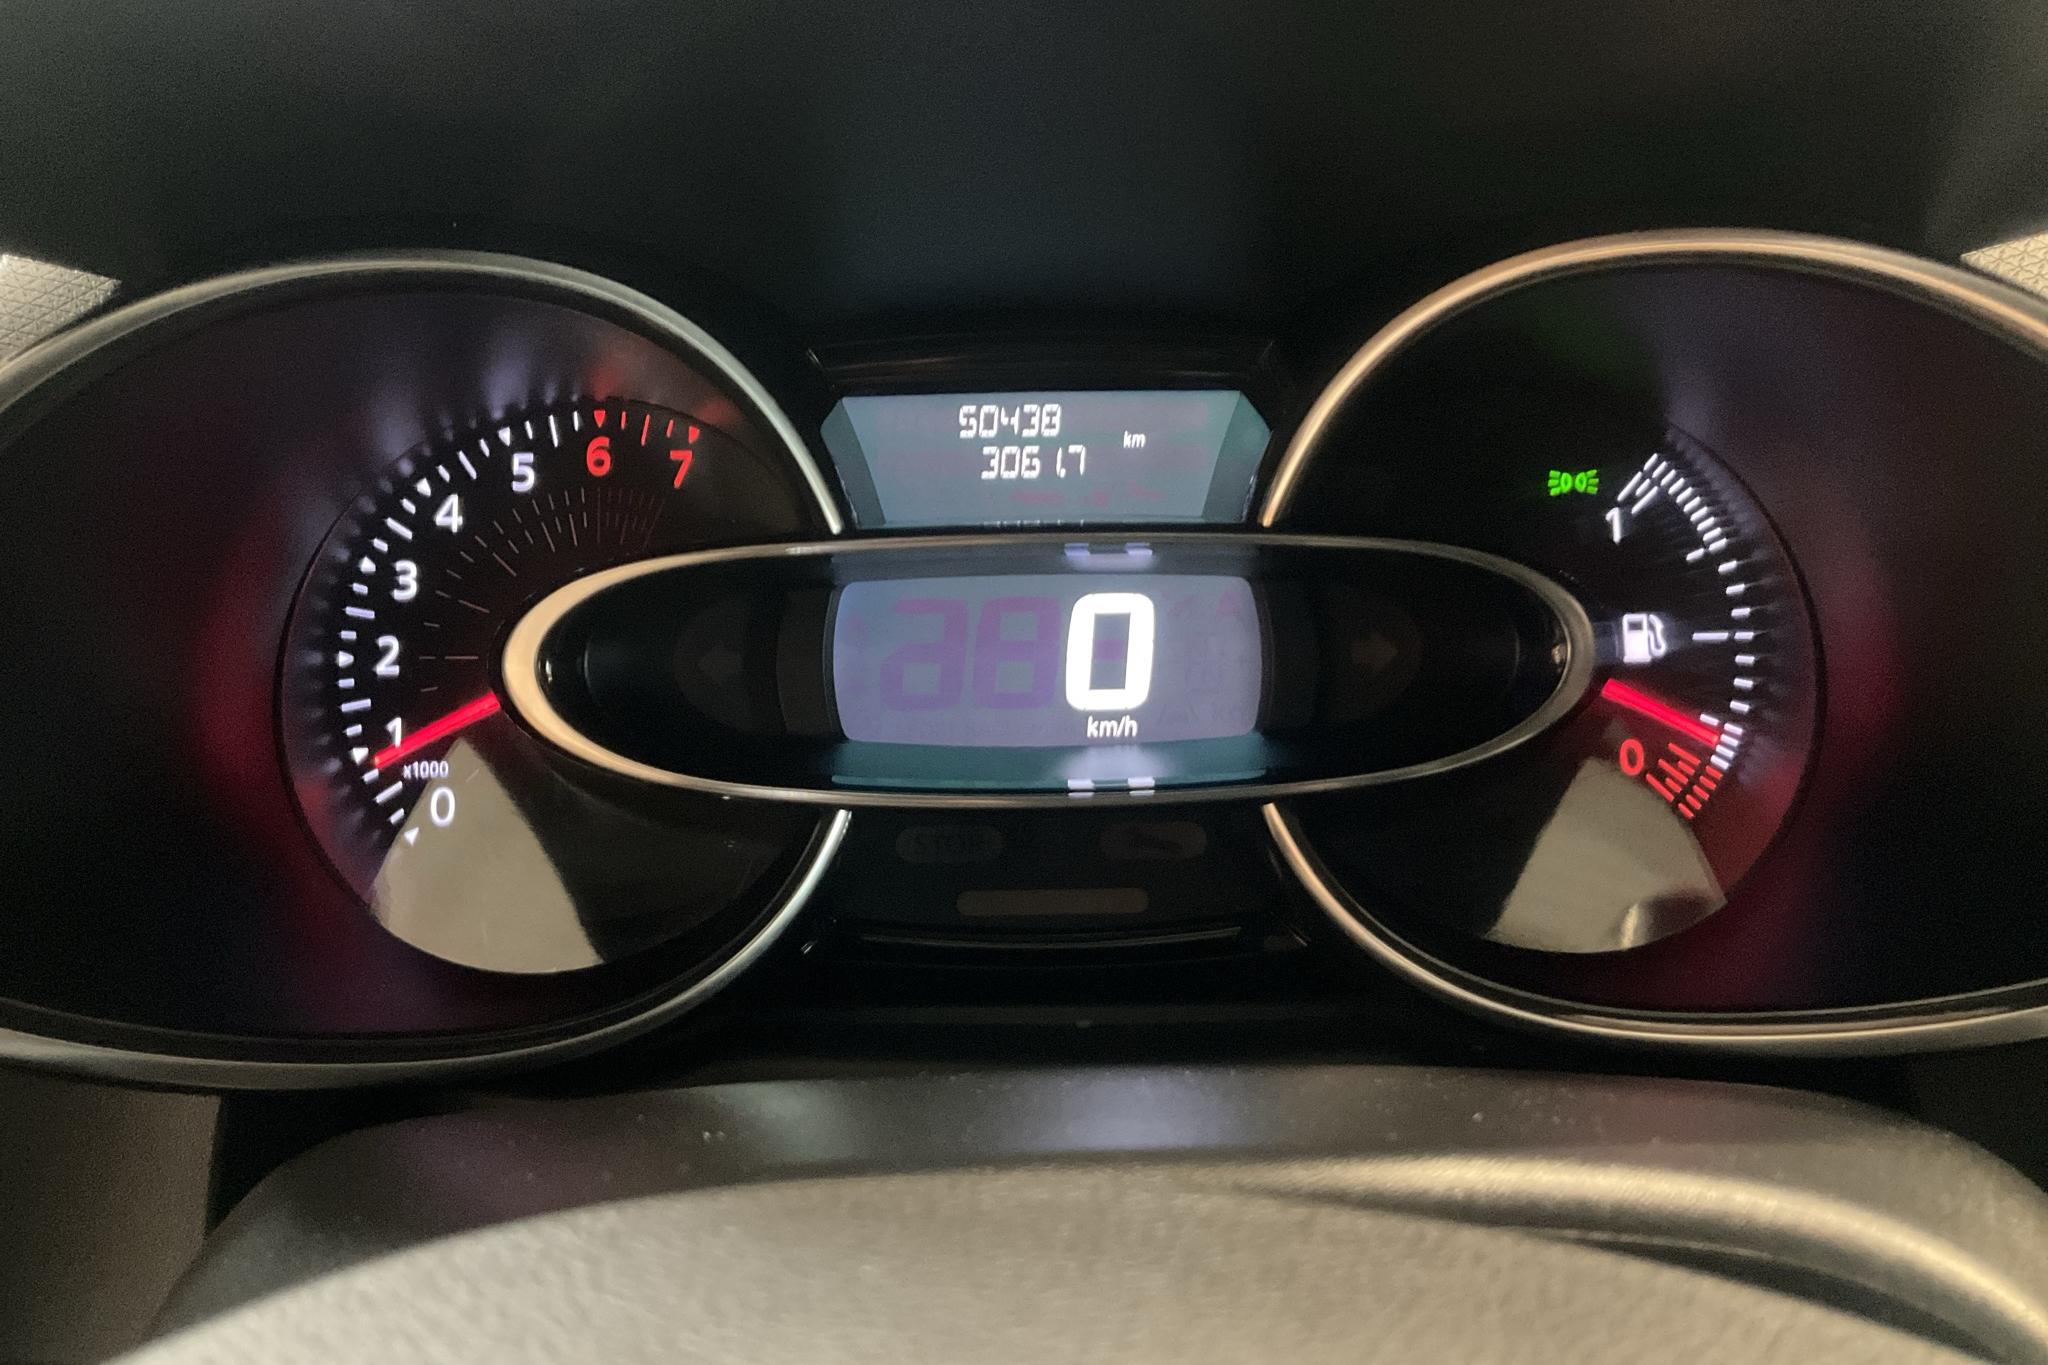 Renault Clio IV 1.2 16V 5dr (75hk) - 5 043 mil - Manuell - röd - 2018